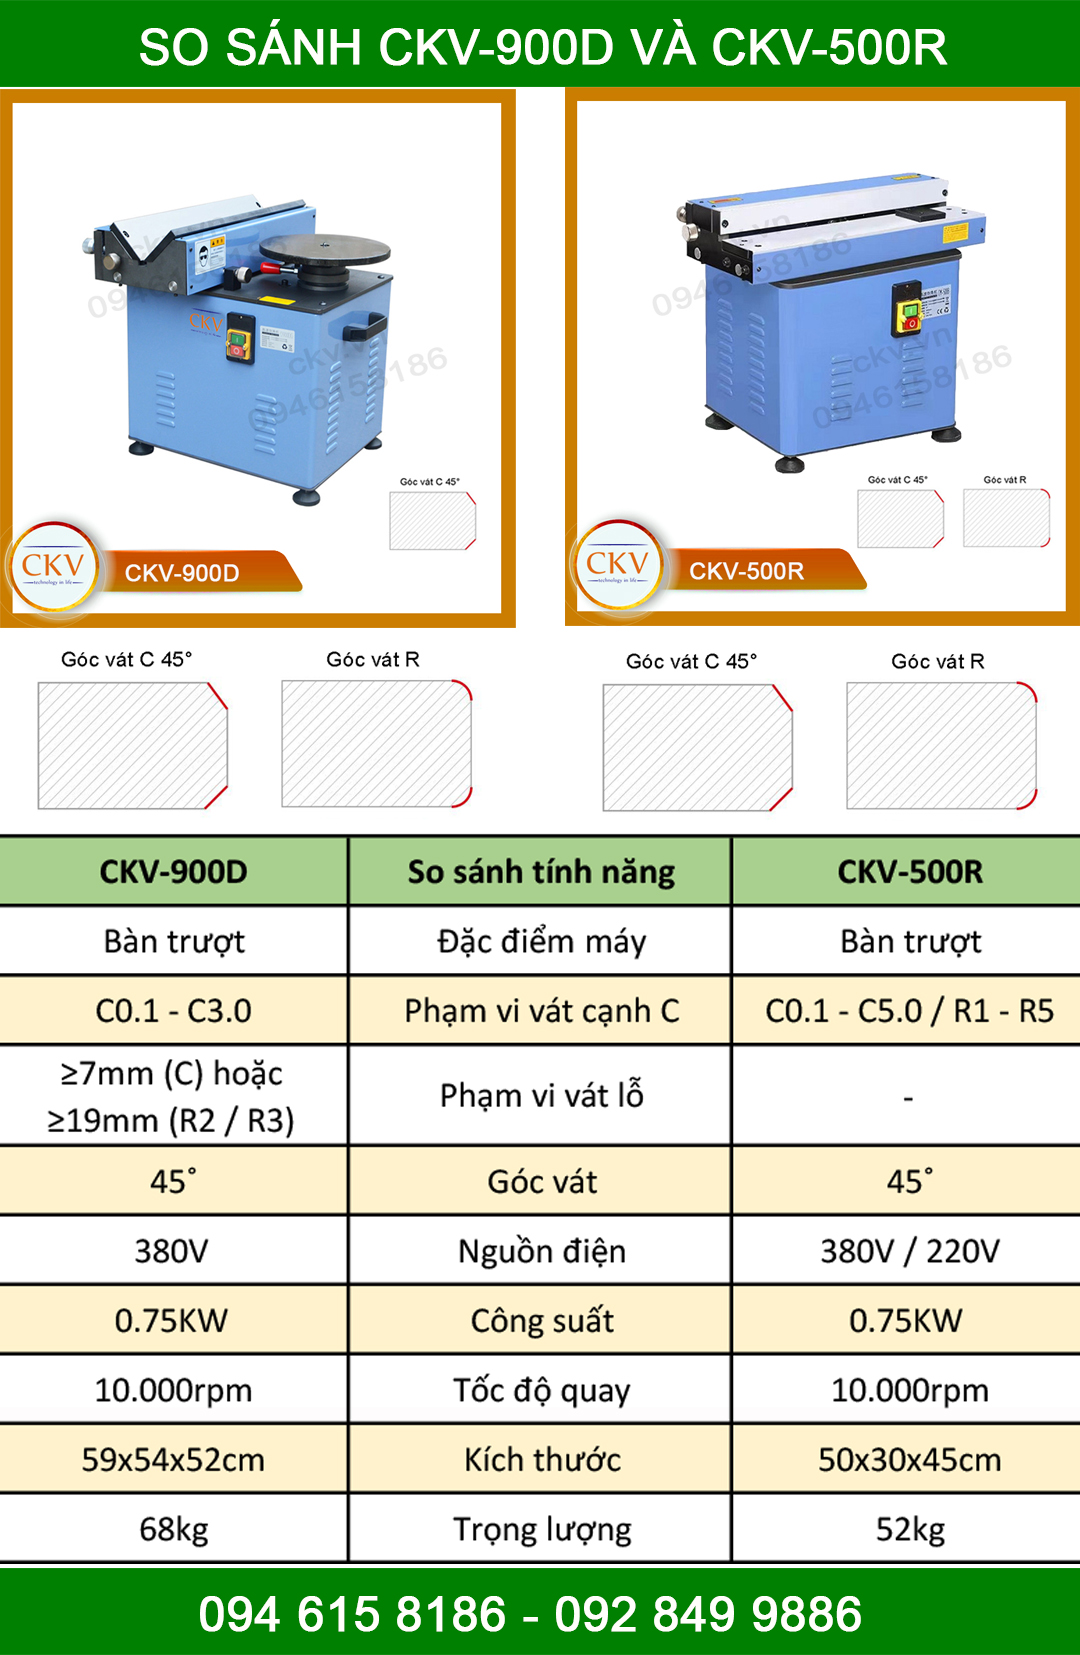 So sánh CKV-900D và CKV-500R